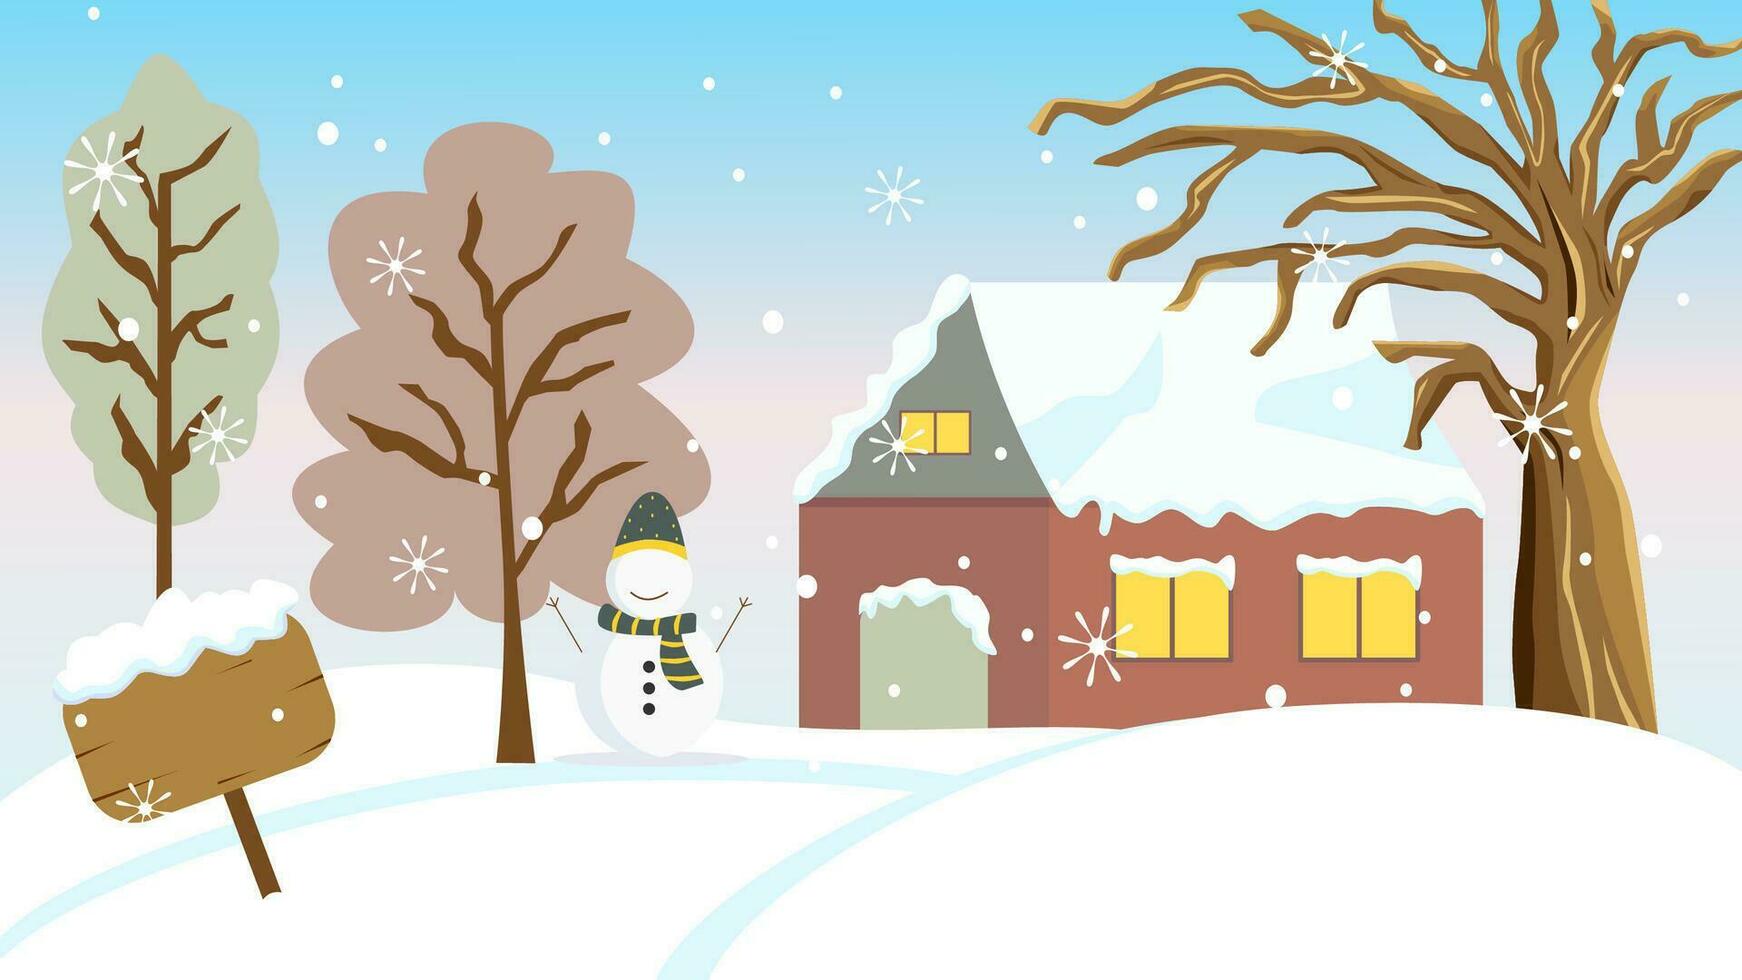 Winter Vektor Landschaft mit Haus und hölzern Zeichen bedeckt durch Schnee, Bäume und groß getrocknet Baum, Schneemann, und Schnee Flocke fallen runter. Winter Illustration mit Kopieren Raum.